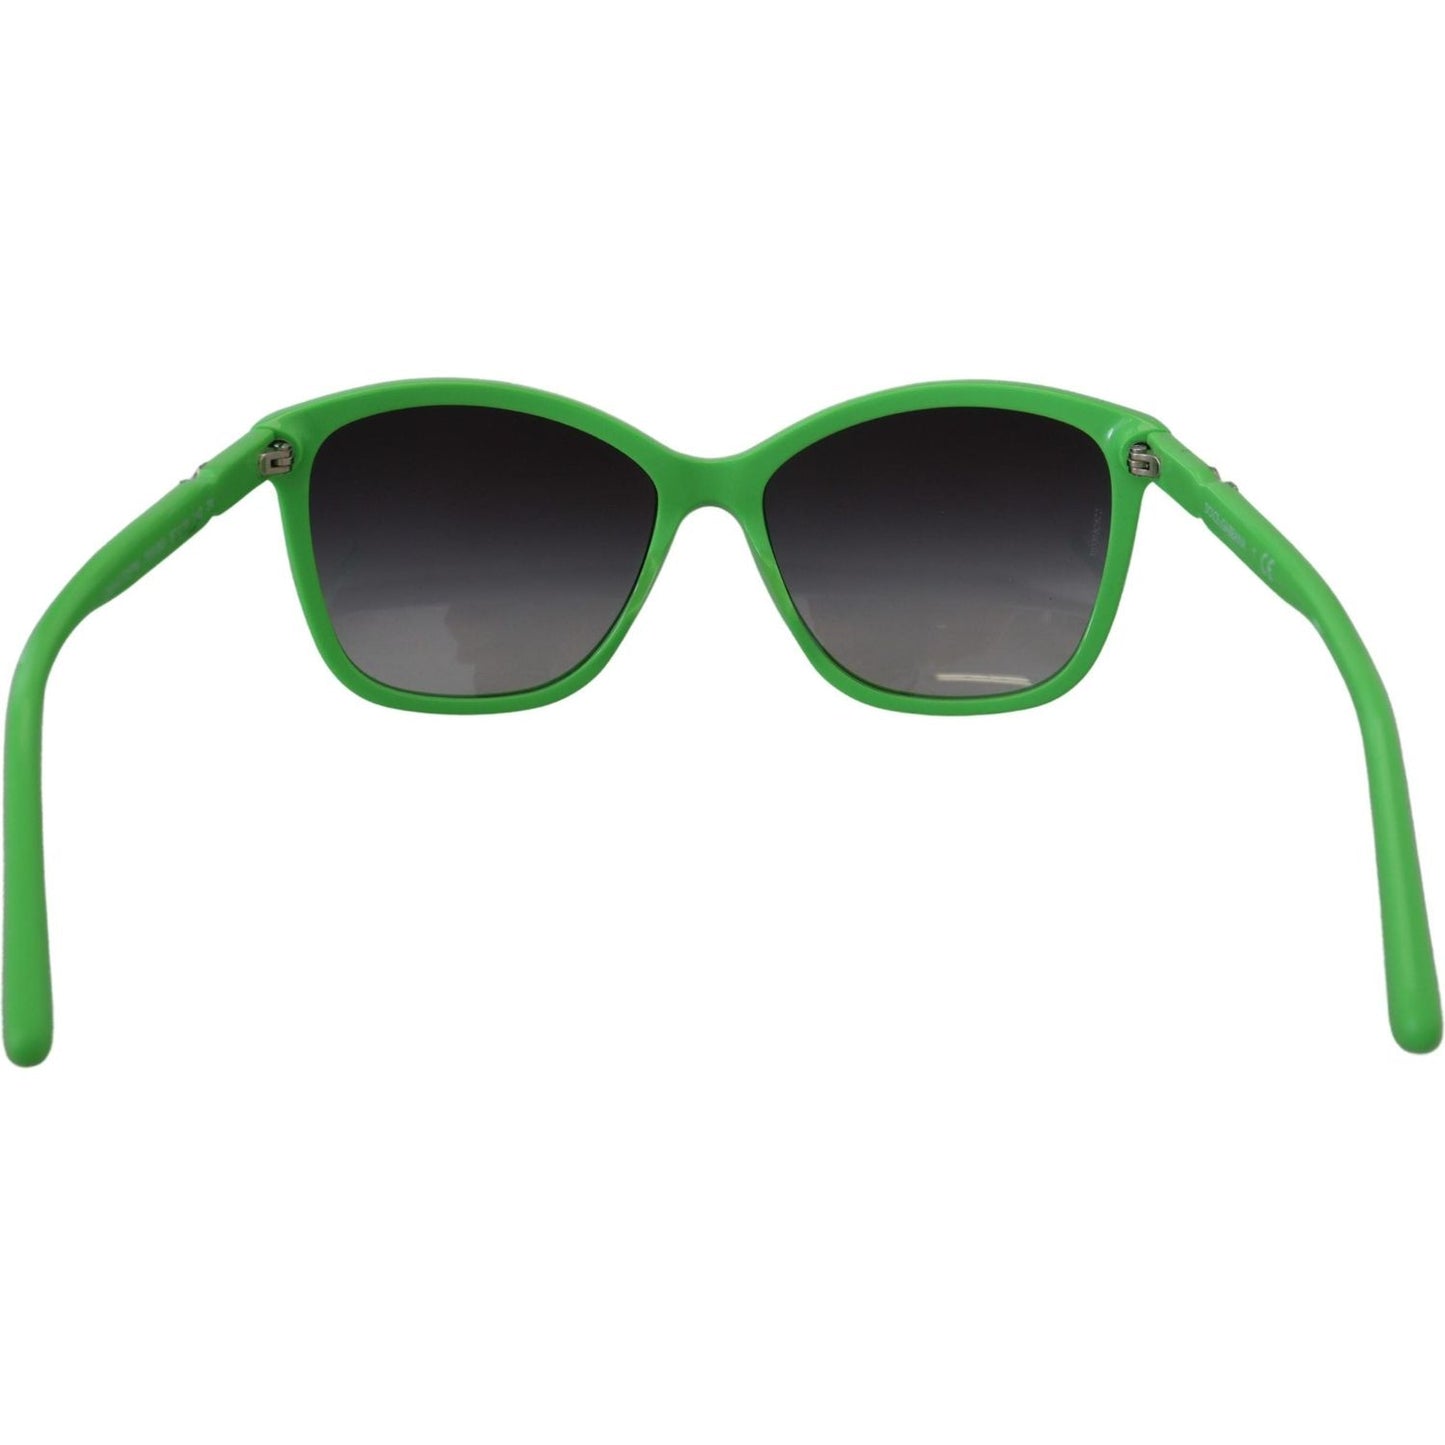 Dolce & Gabbana Chic Green Acetate Round Sunglasses green-acetate-frame-round-shades-dg4170pm-sunglasses